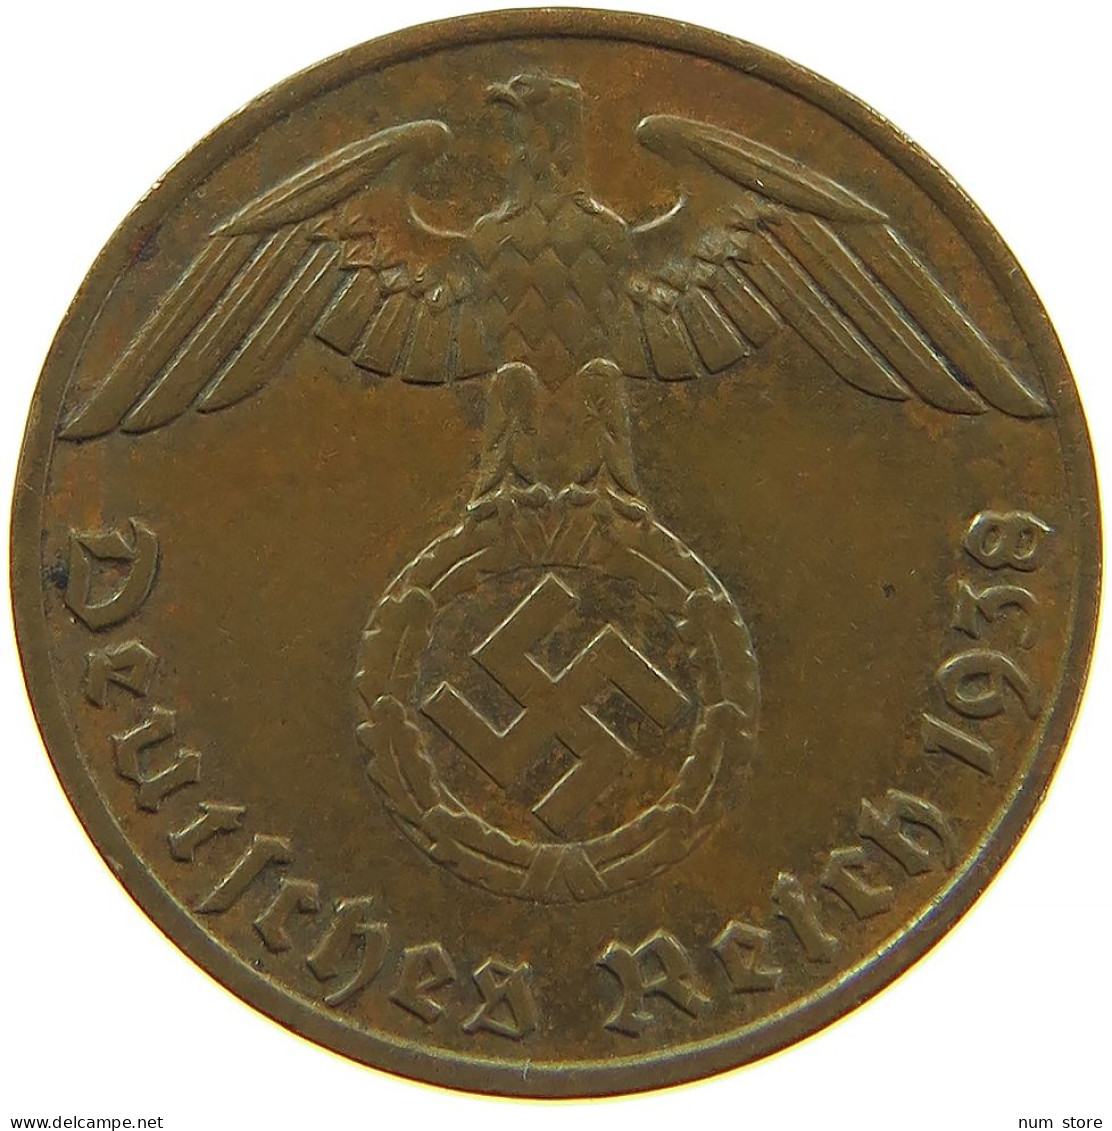 GERMANY 1 REICHSPFENNIG 1938 E #s083 0737 - 1 Reichspfennig